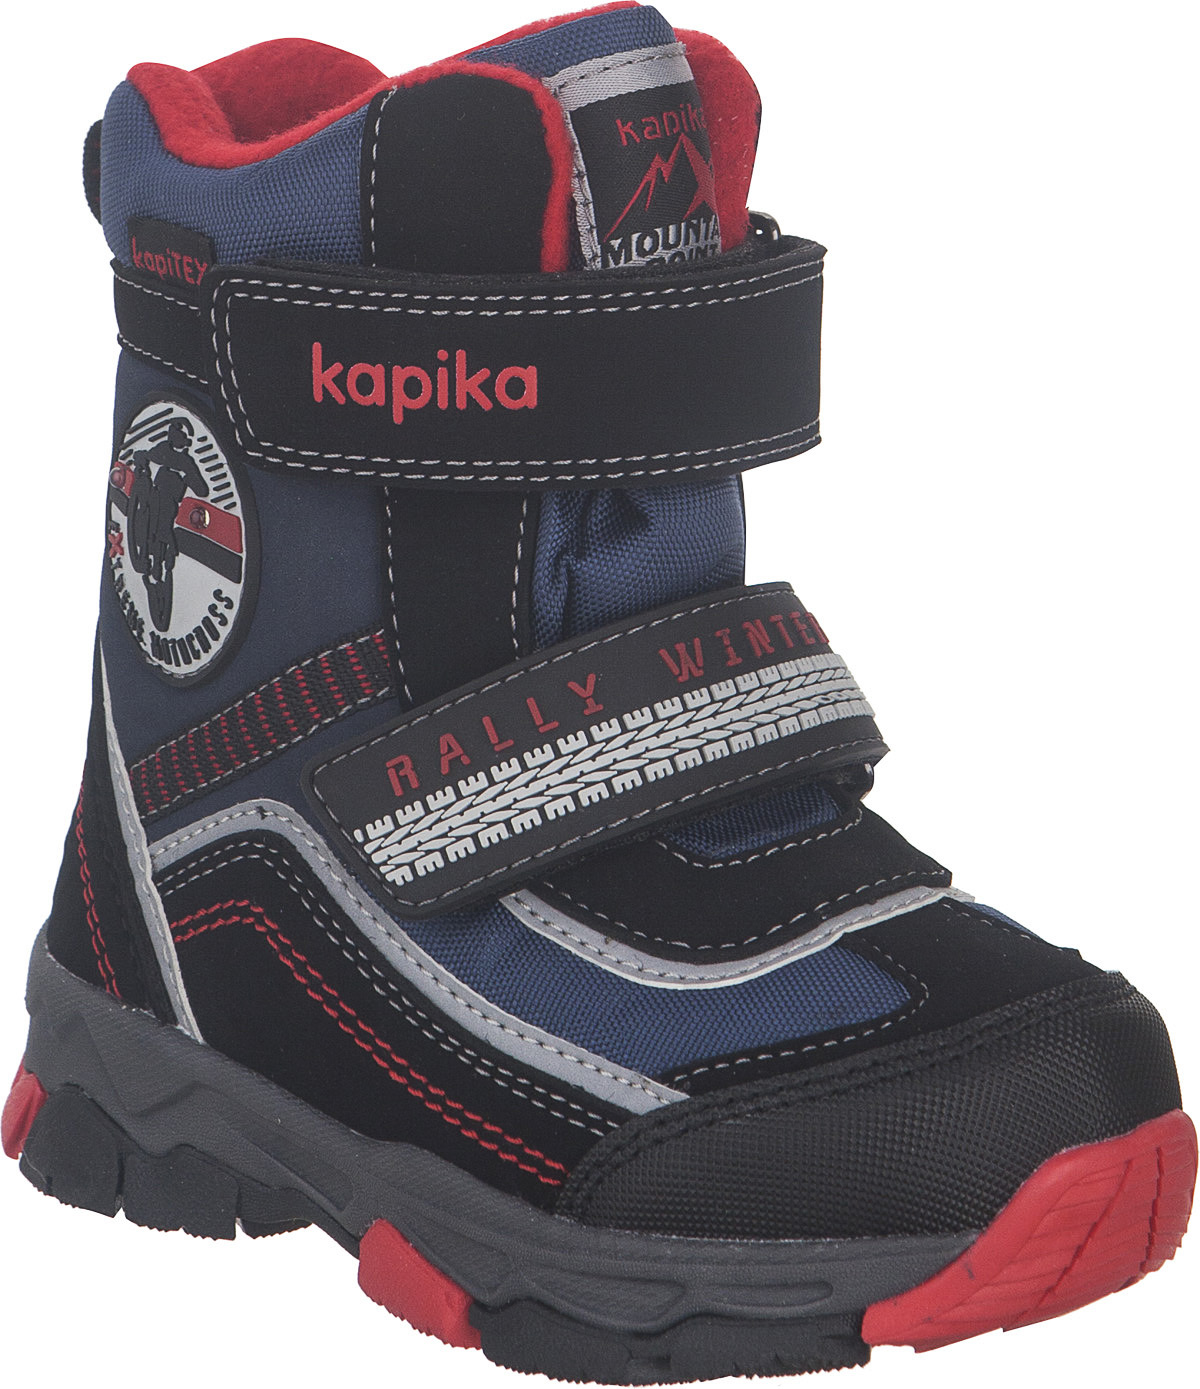 Ботинки для мальчика Kapika KapiTEX, цвет: черный, синий, красный. 41230-2. Размер 26